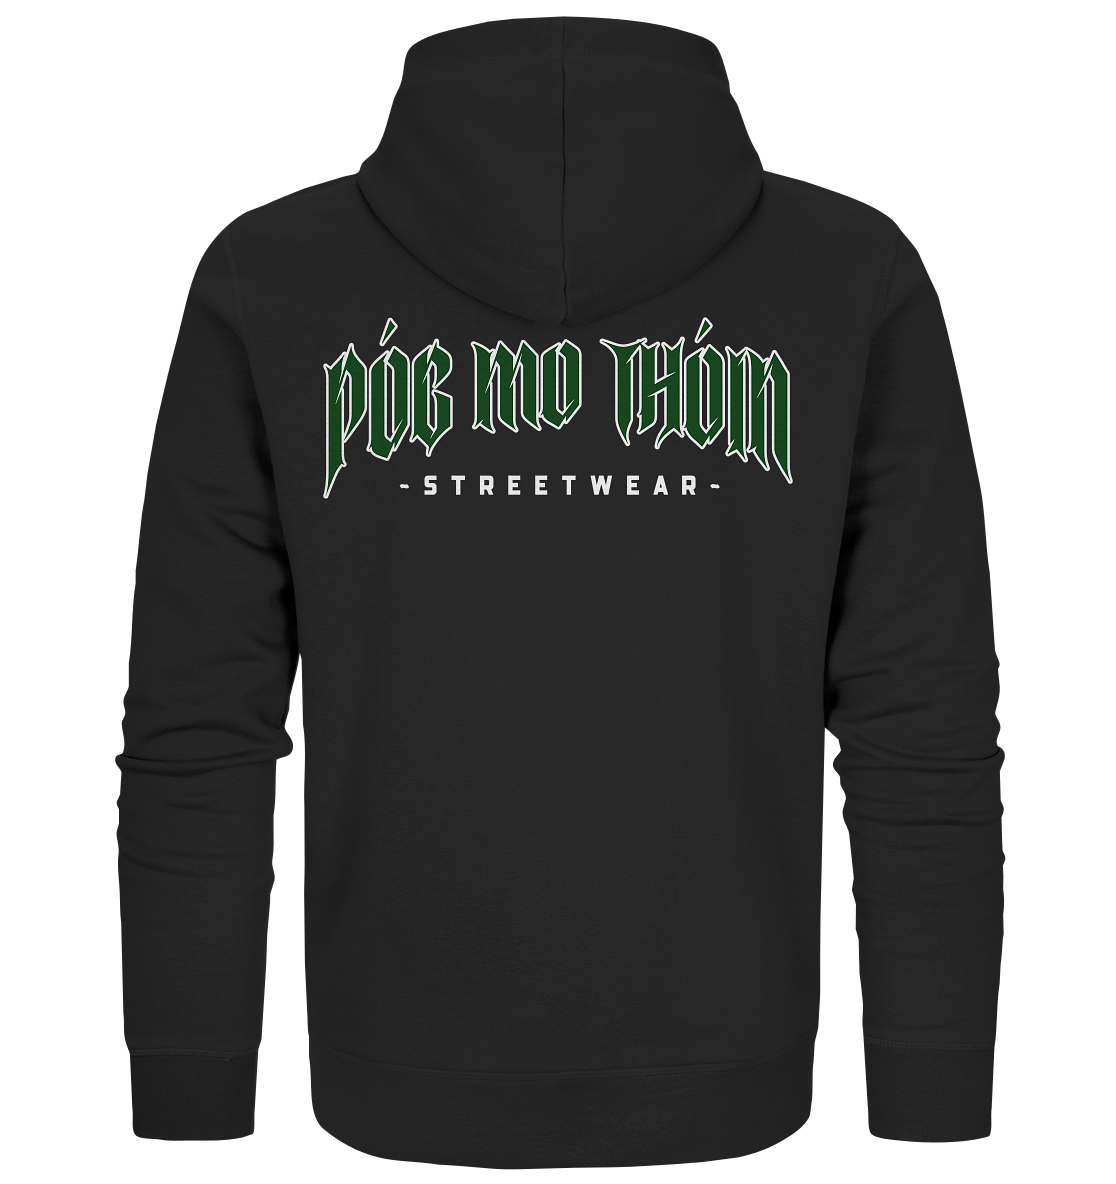 Póg Mo Thóin Streetwear "Green Logo" - Organic Zipper